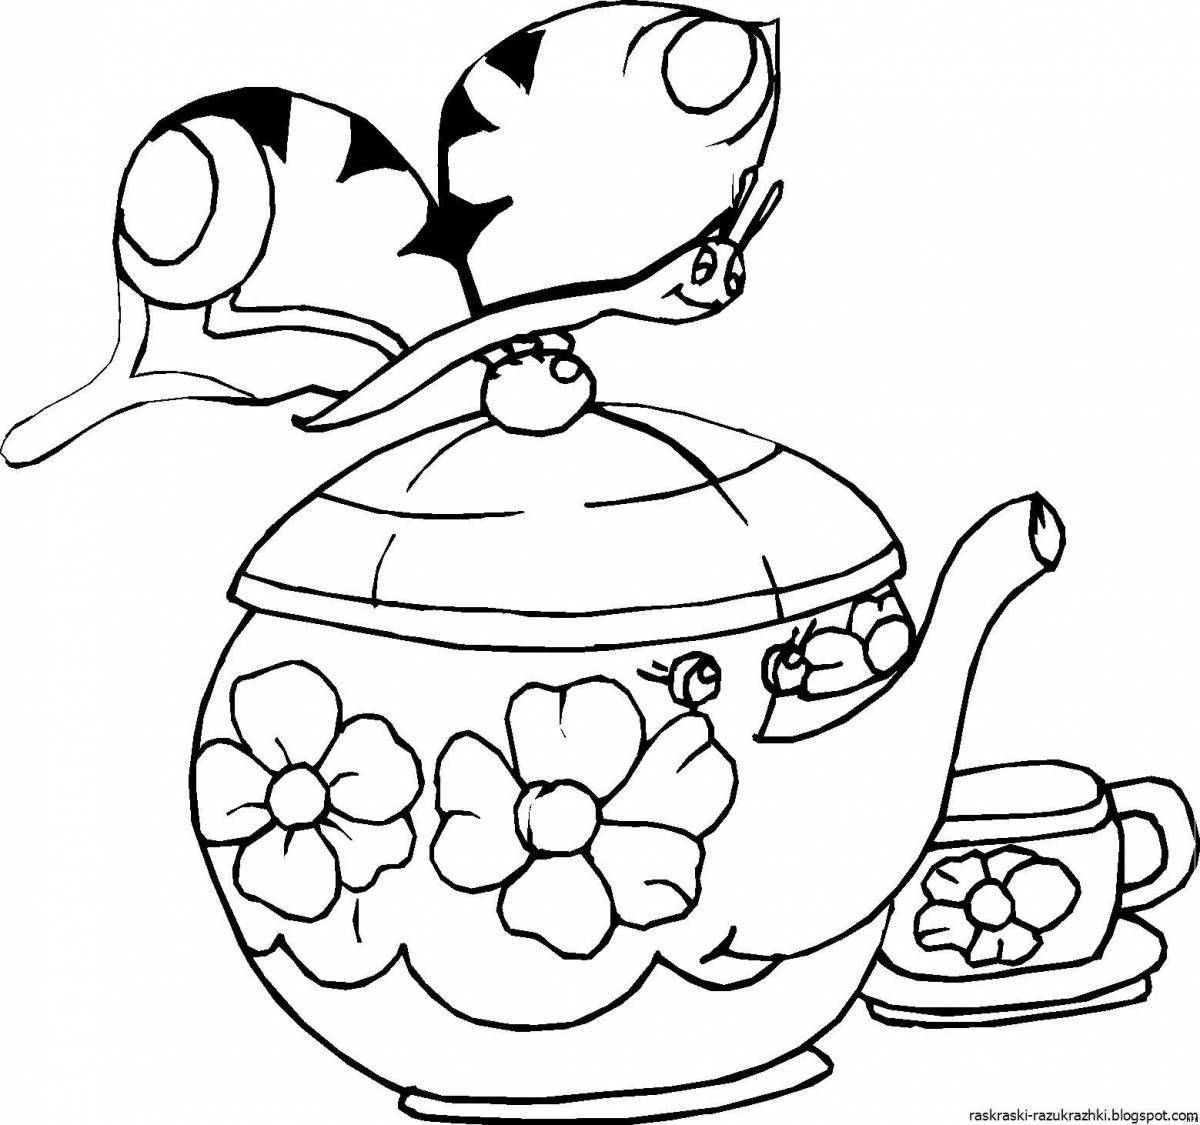 Цветной чайник-раскраска для детей 4-5 лет